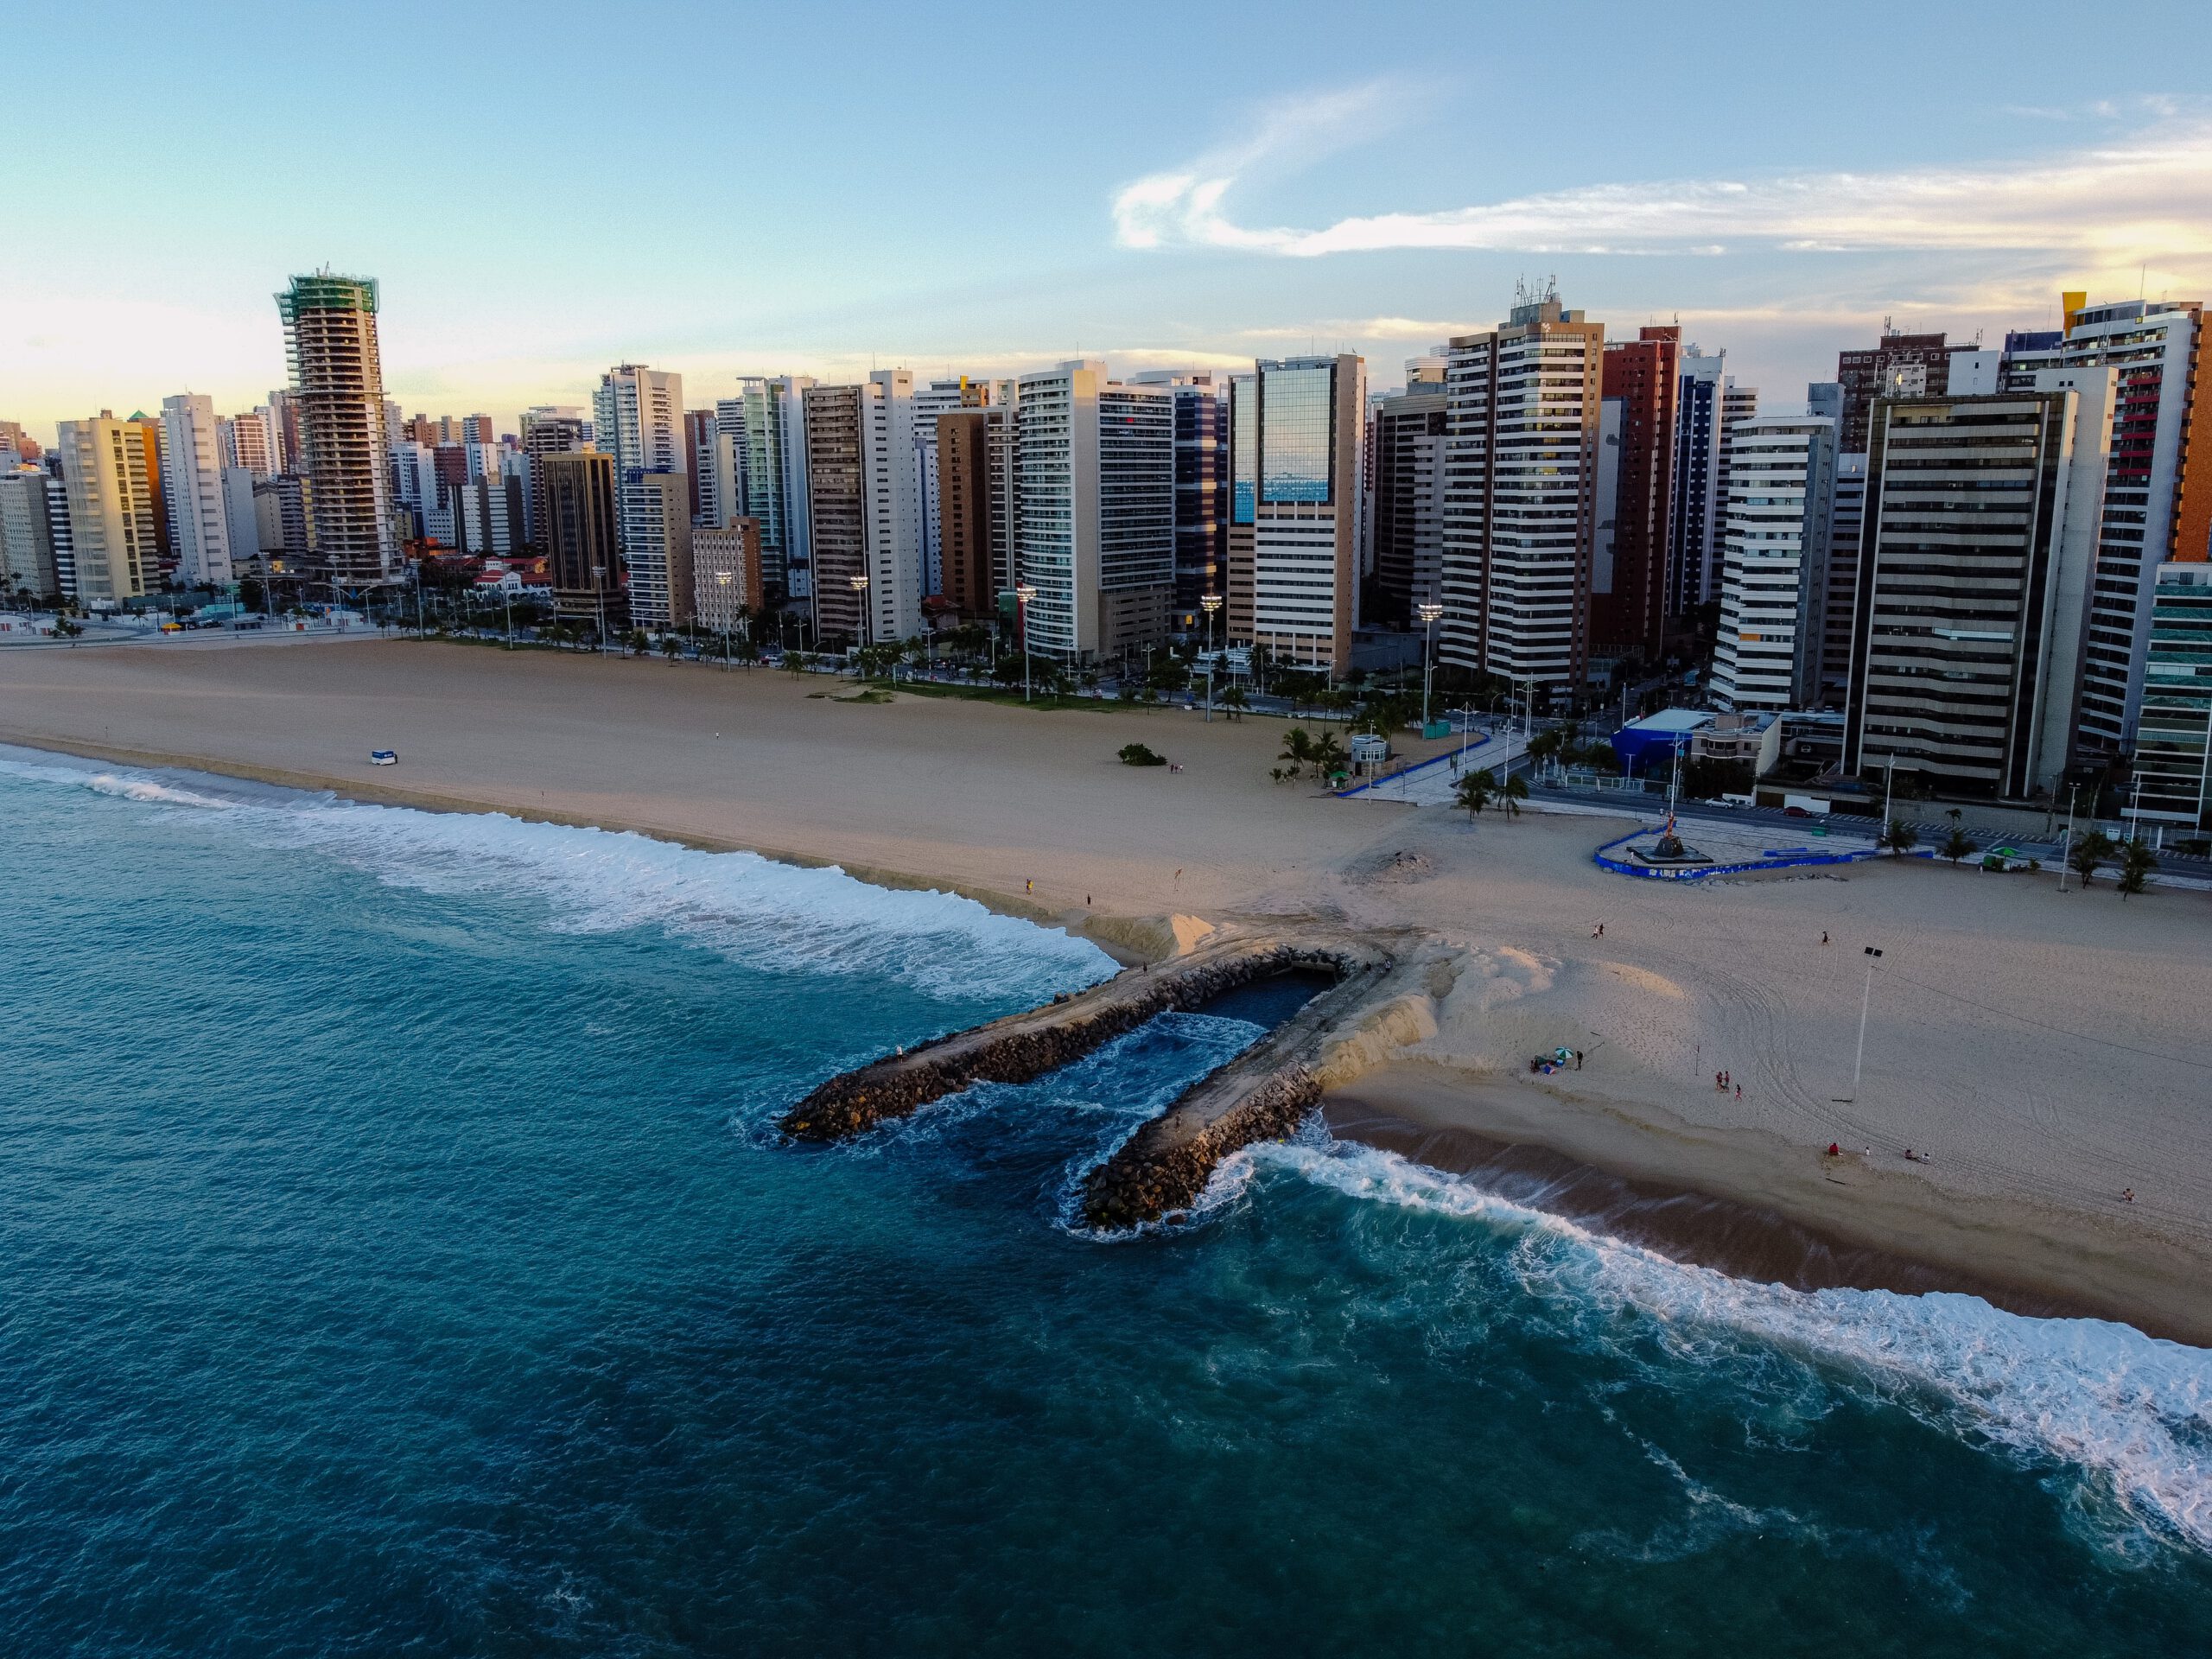 brazilie-Fortaleza-strand-gebouwen-wolkenkrabbers